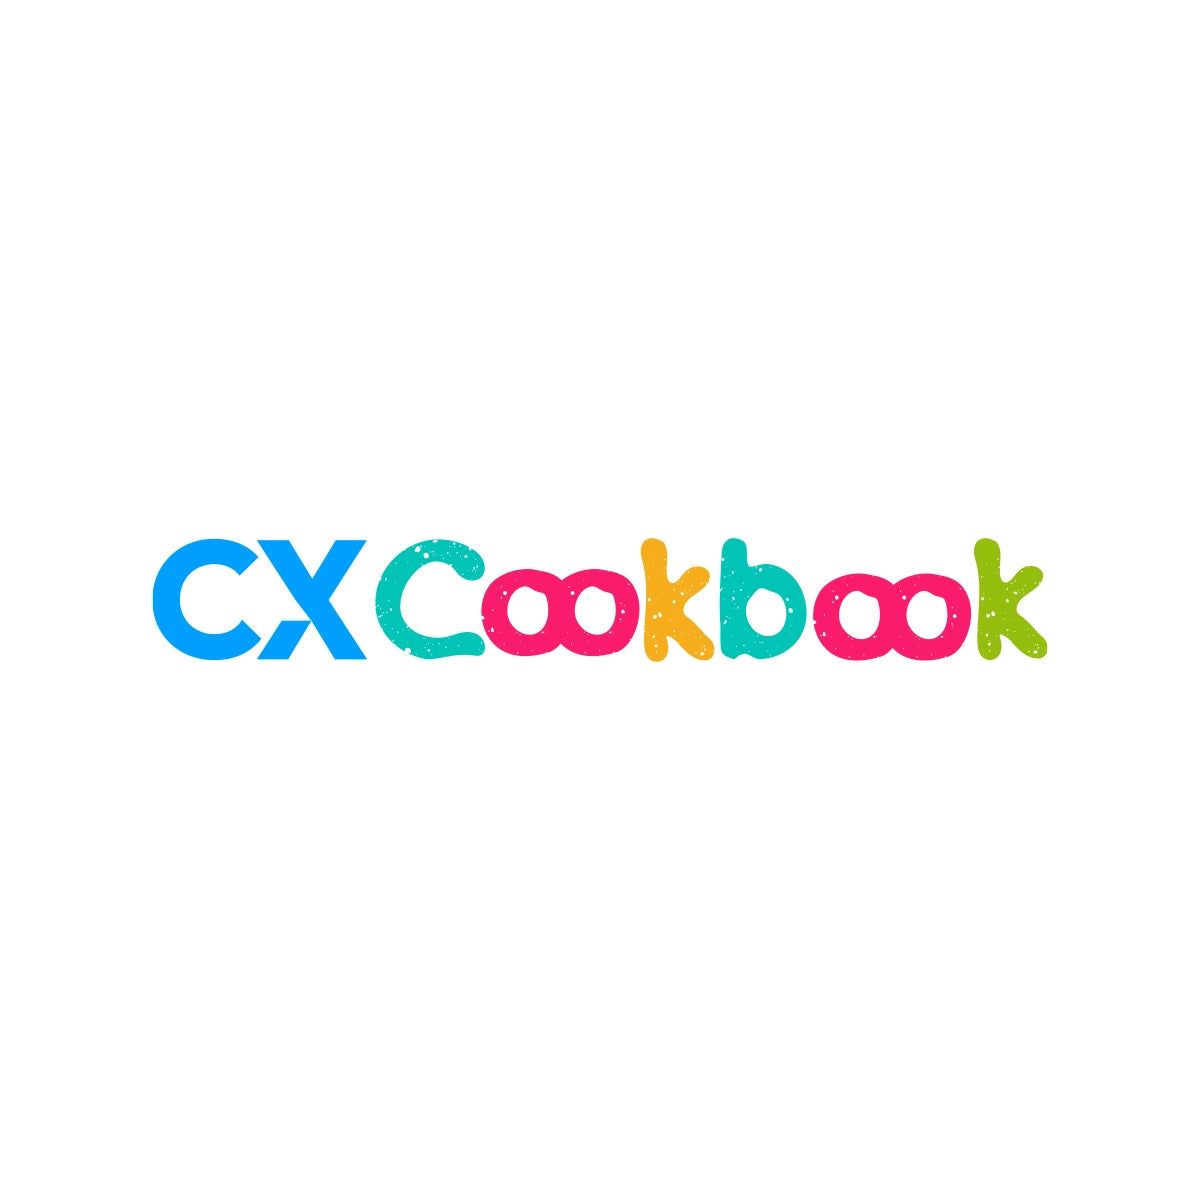 cxcookbook.com